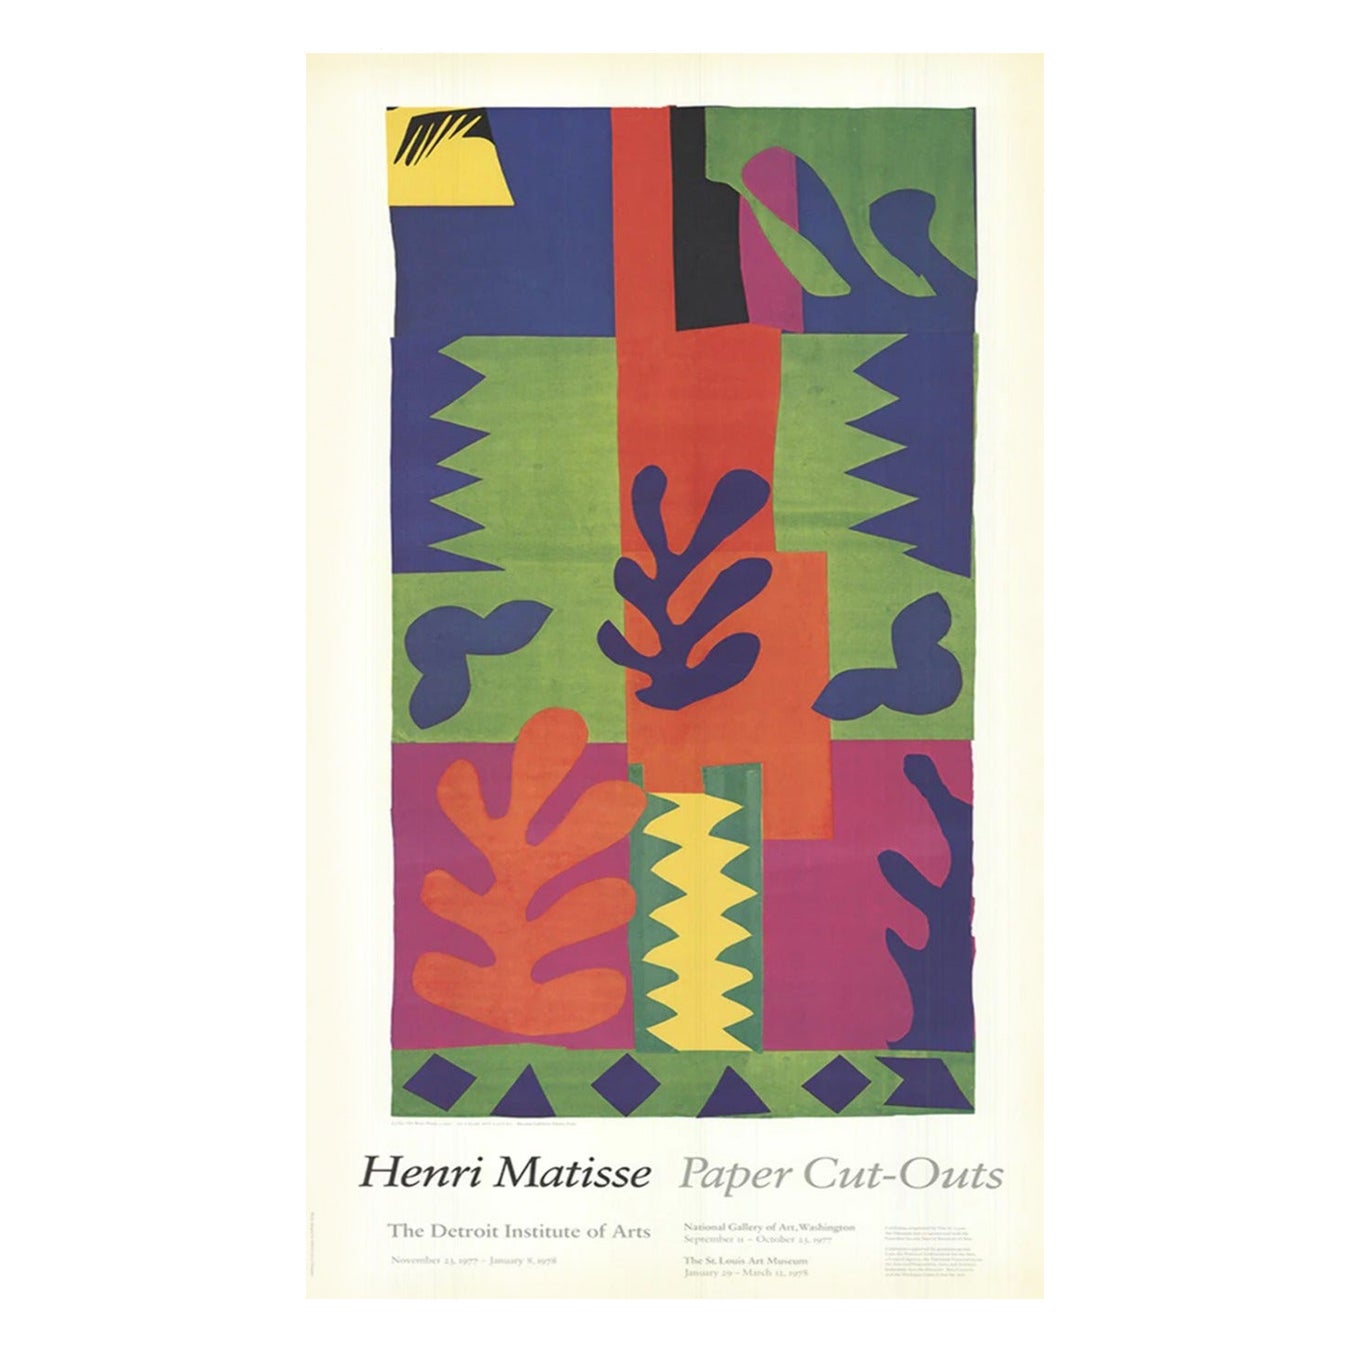 Henri Matisse - Des découpes de papier - Detroit Institute of Arts - Affiche originale de 1977